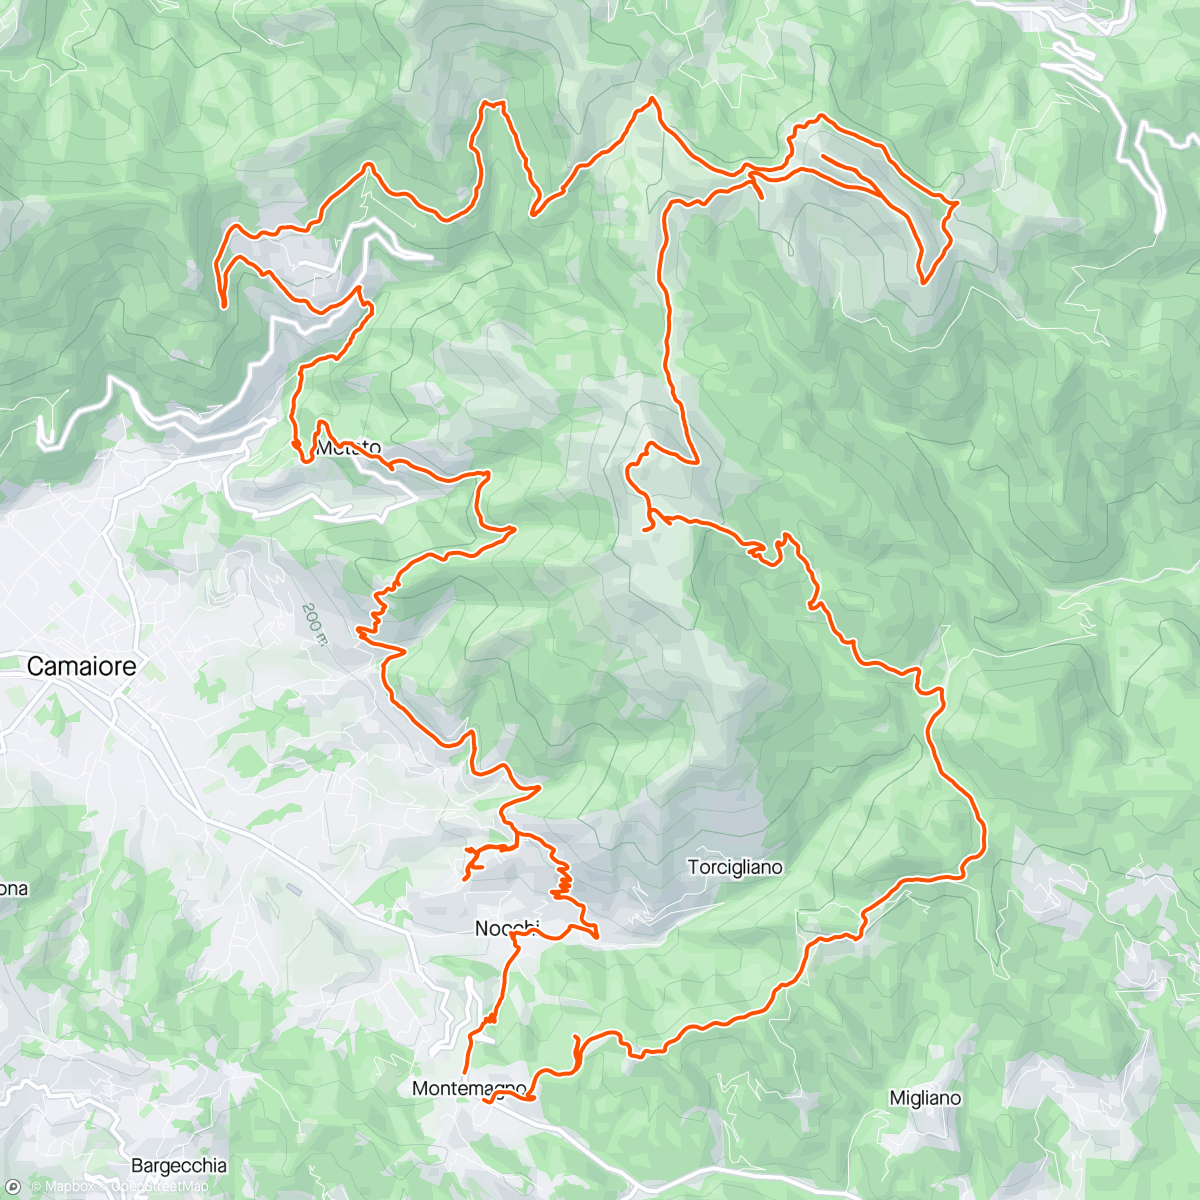 Mappa dell'attività Maratona Alpi Apuane Meridionali e traversata frazioni Camaioresi Vette M.Prano M.Prana M.Piglione ⛰️⛰️⛰️🔝🔝🔝💪🏼🤙🏻